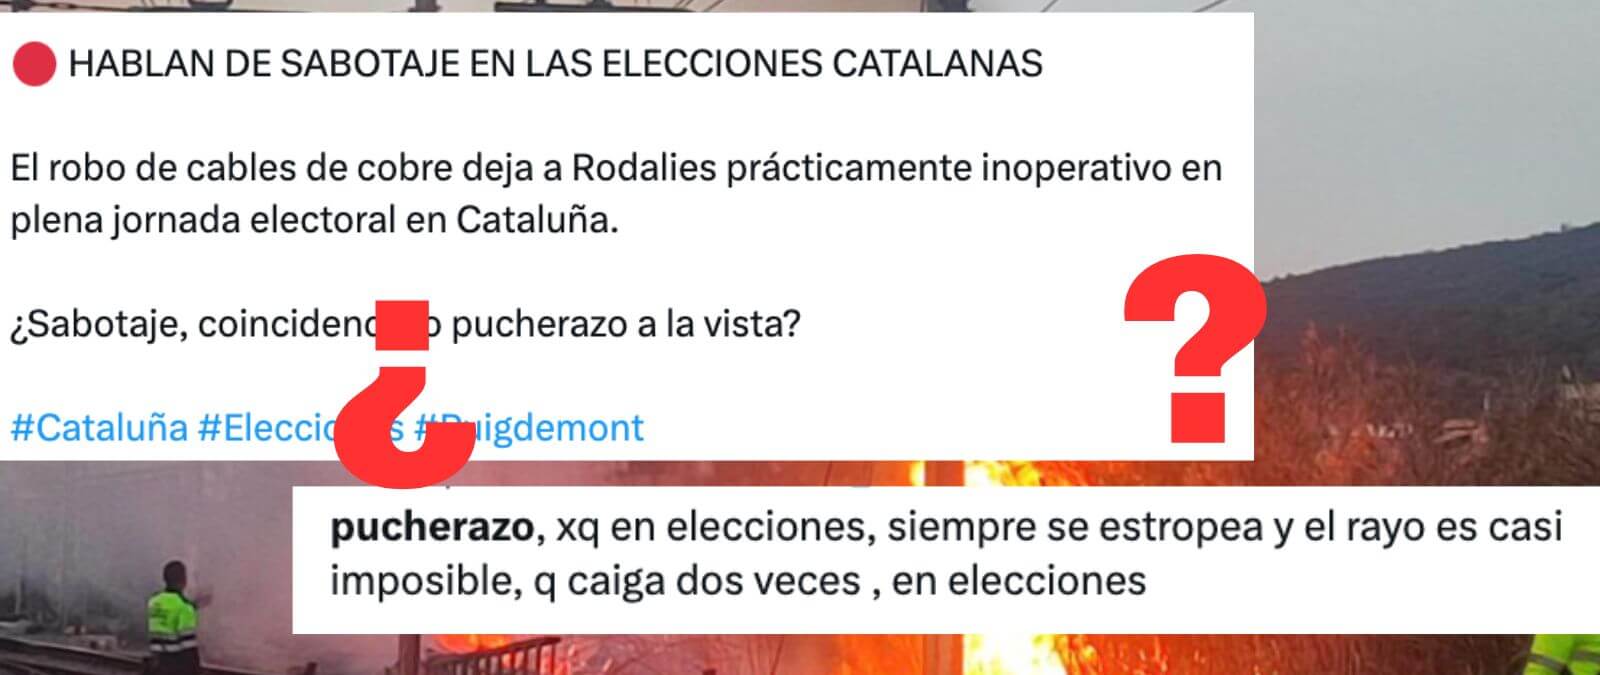 Qué sabemos de la incidencia en Rodalies del 12 de mayo y de las teorías que dicen que es un sabotaje relacionado con las elecciones de Cataluña